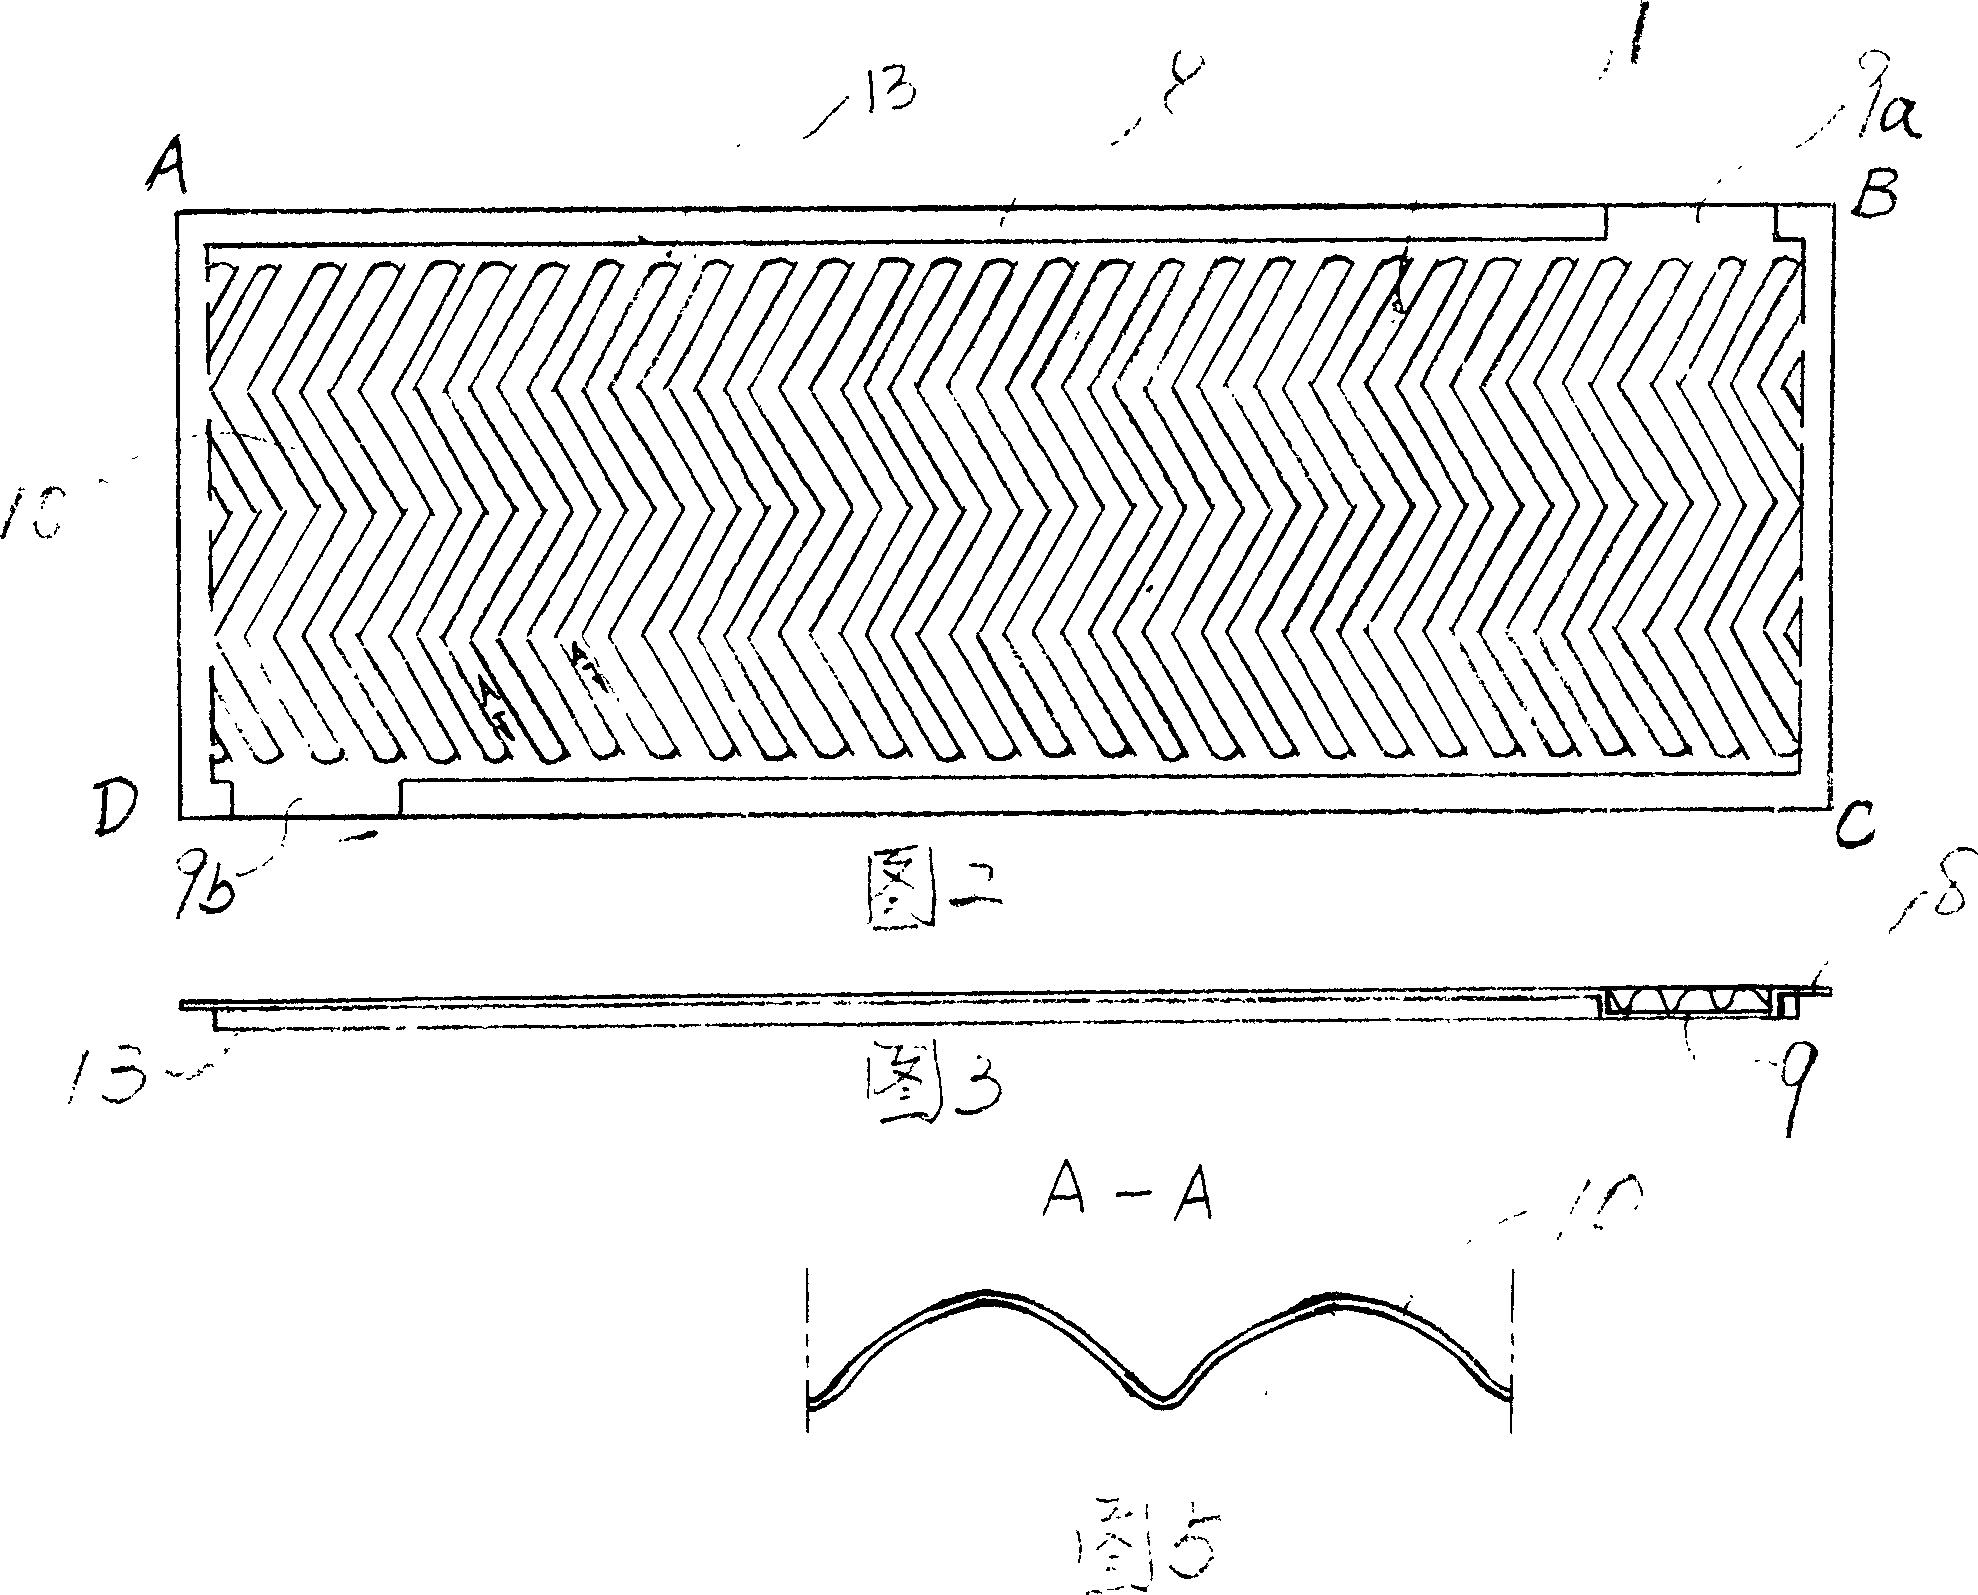 Plate type heat exchanger